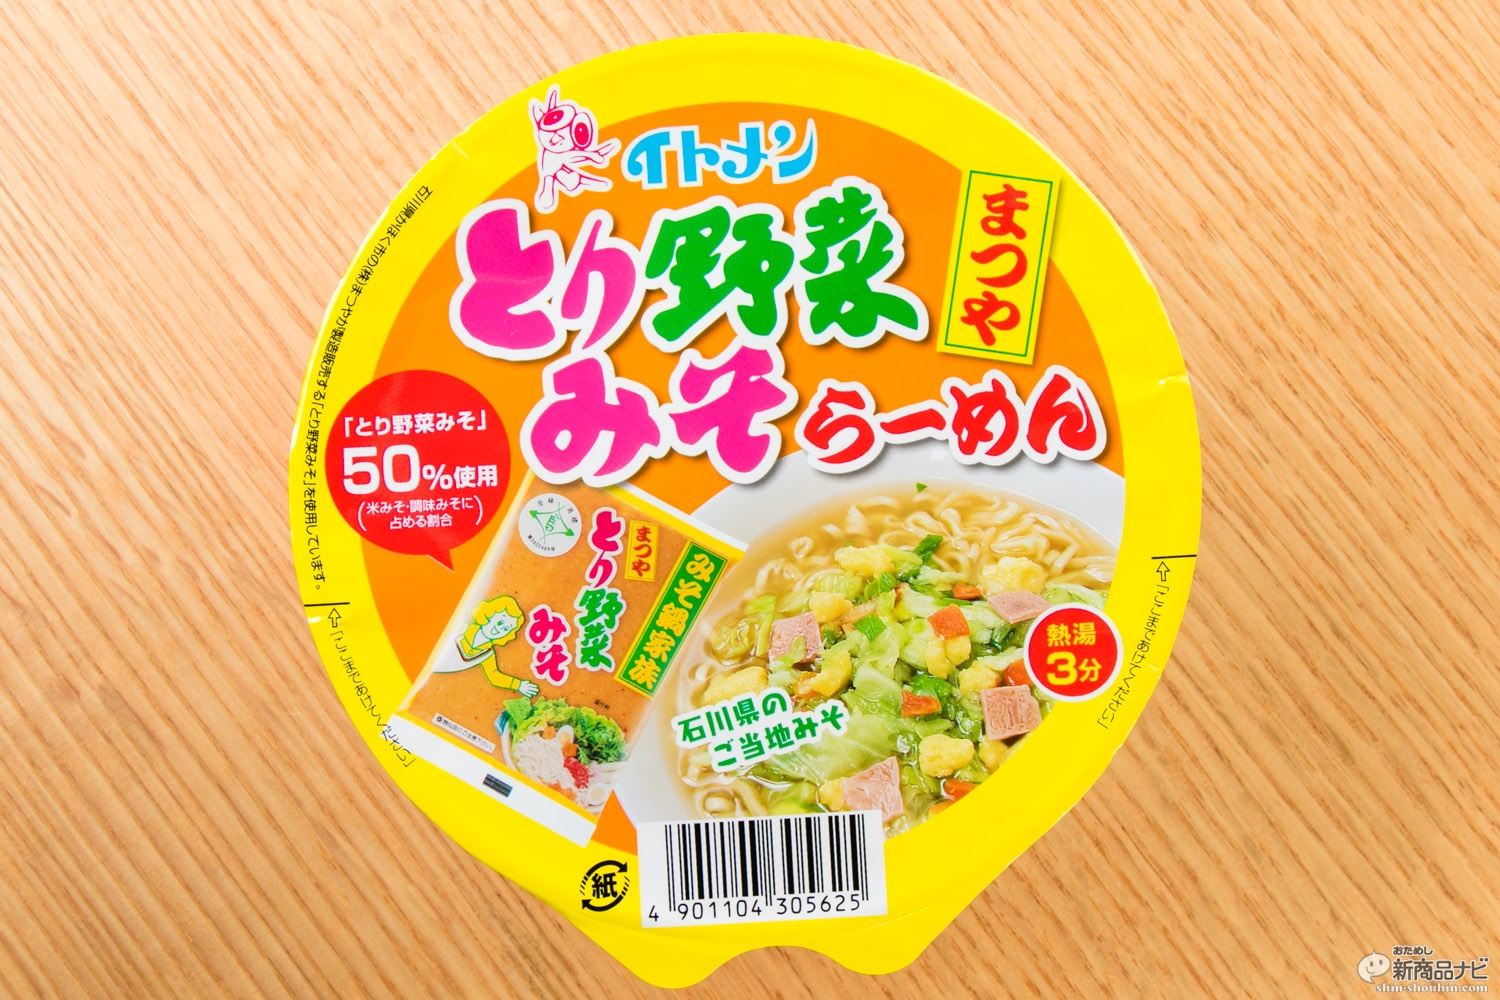 おためし新商品ナビ Blog Archive カップとり野菜みそらーめん 石川県民熱愛の味が お湯を入れてすぐ楽しめるカップ麺になりました